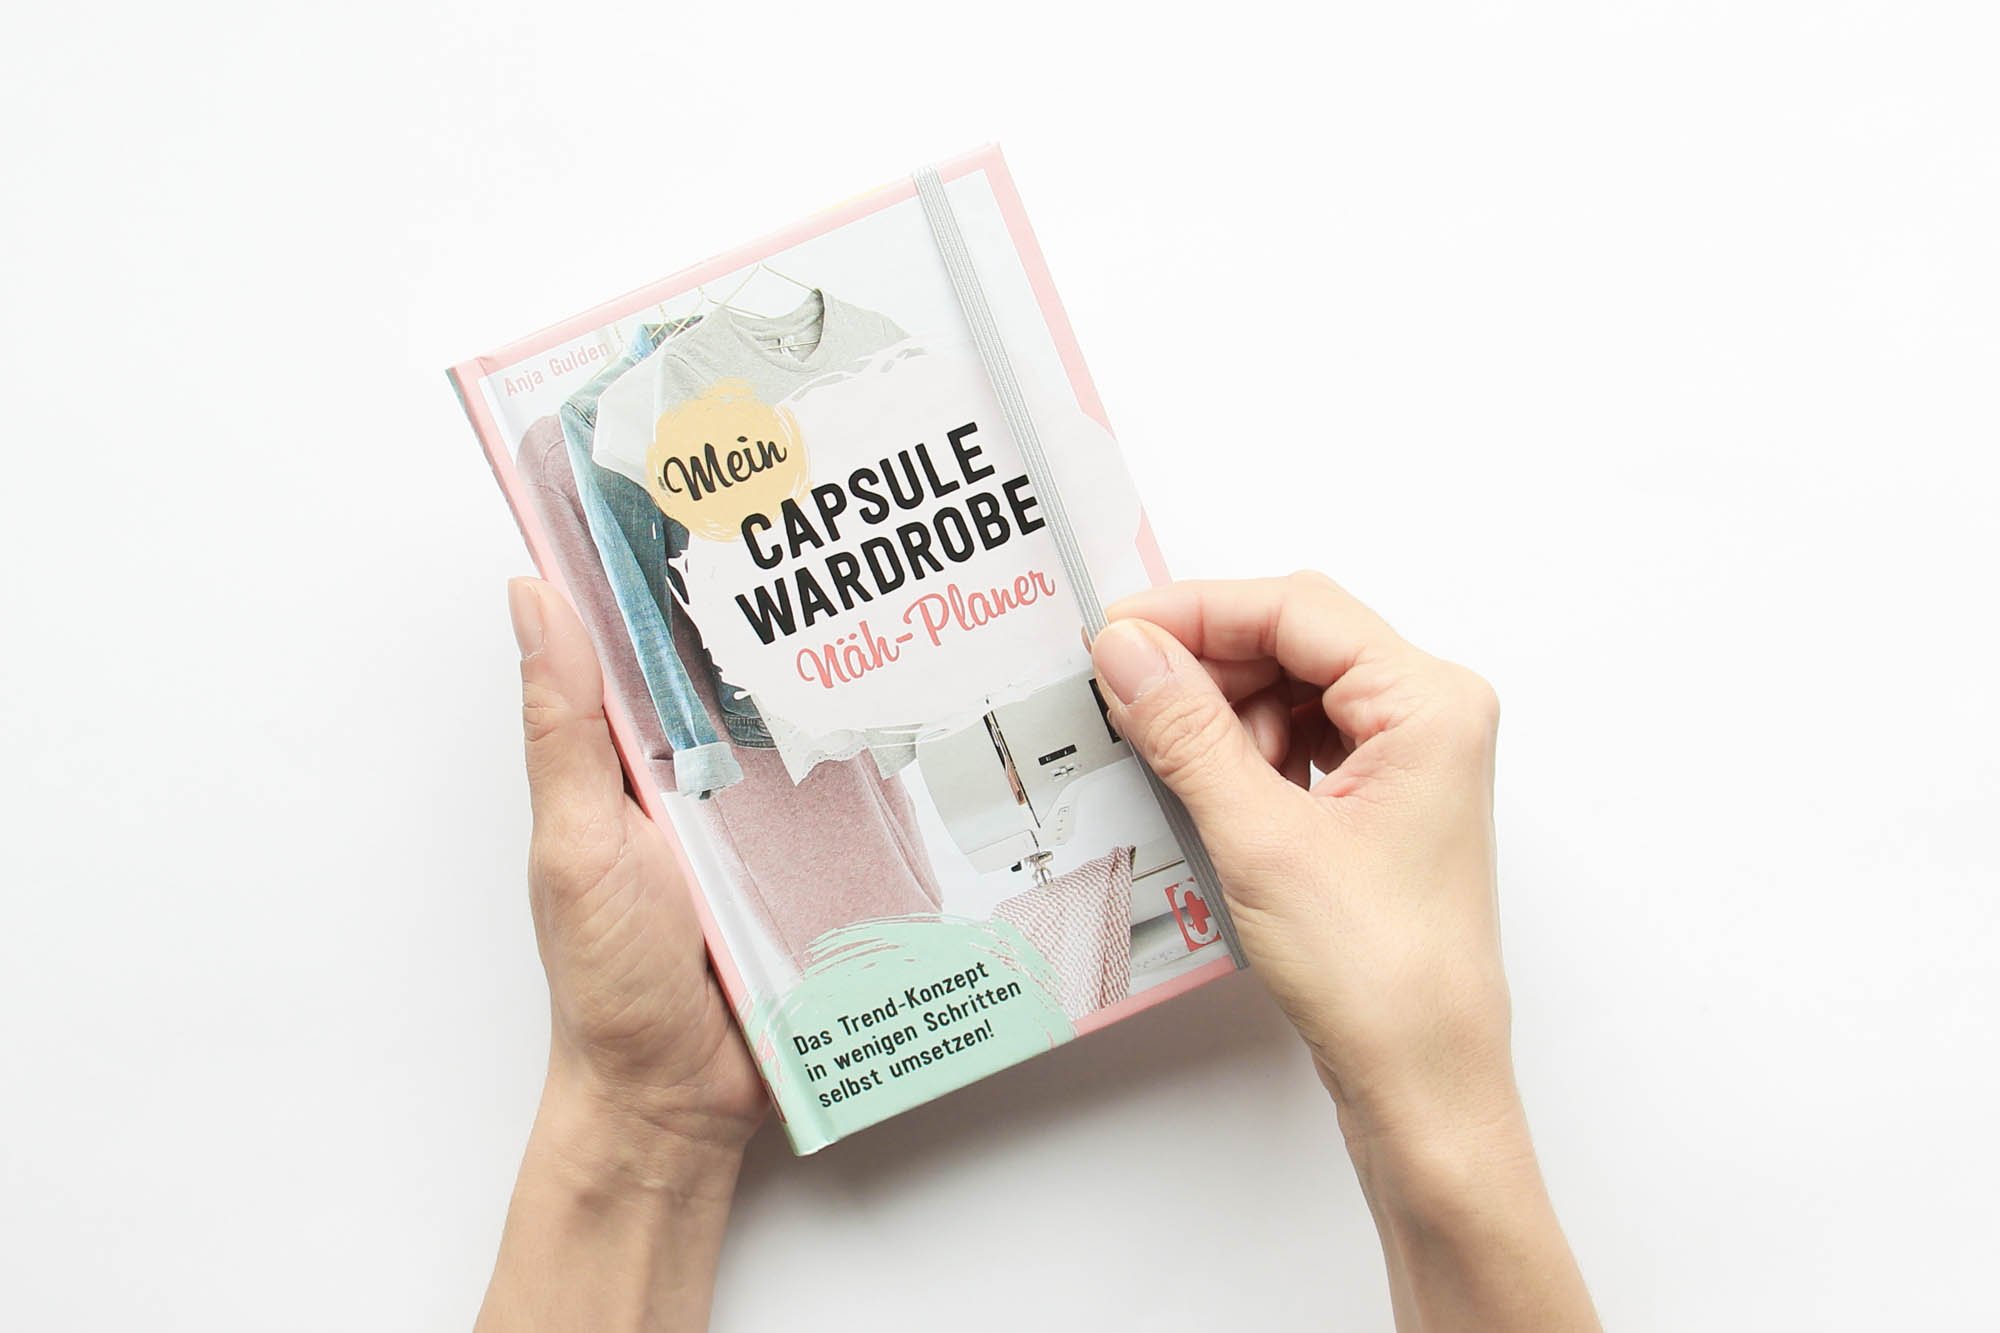 Mein Capsule Wardrobe Nähplaner - Das Buch zum Workshop. Halte Deine Planungen für Deine persönliche selbstgenähte Capsule Wardrobe im Buch fest.